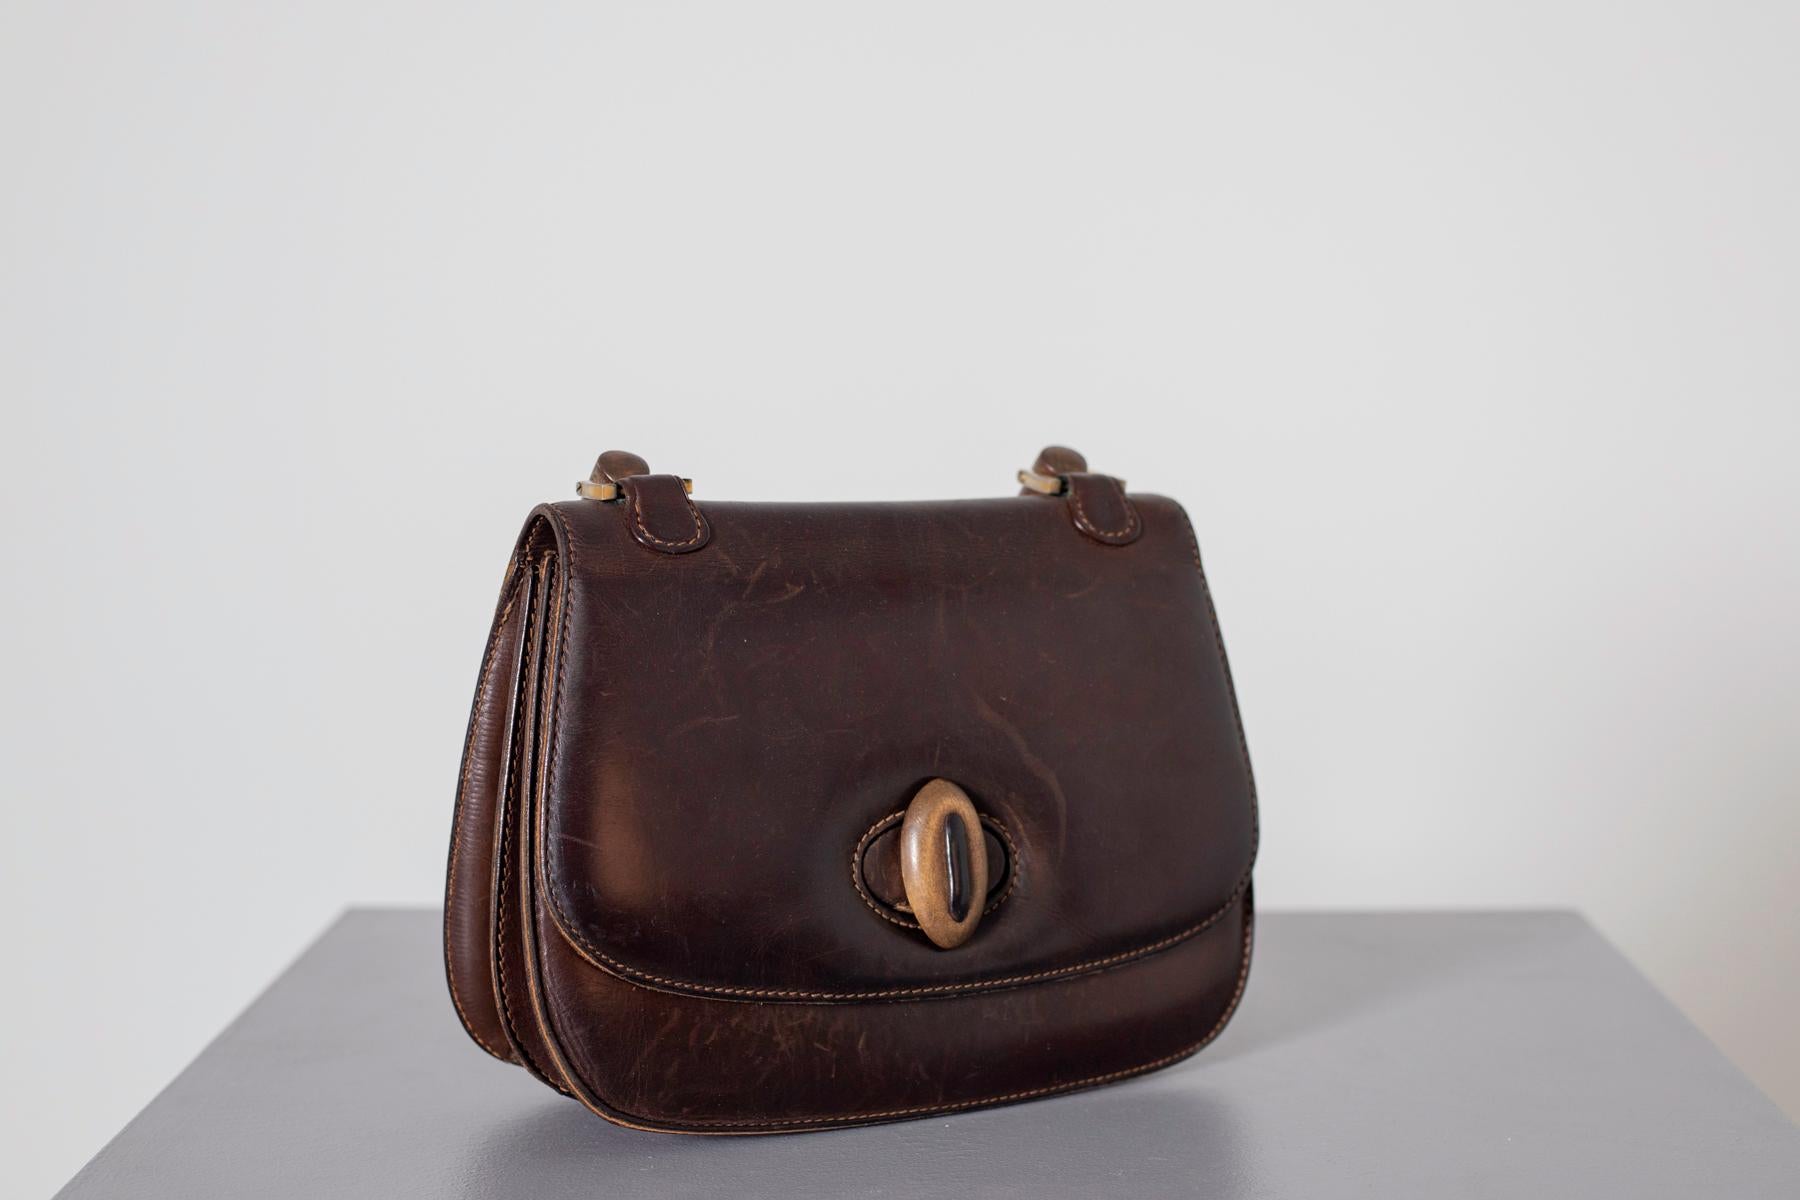 1940 gucci handbag